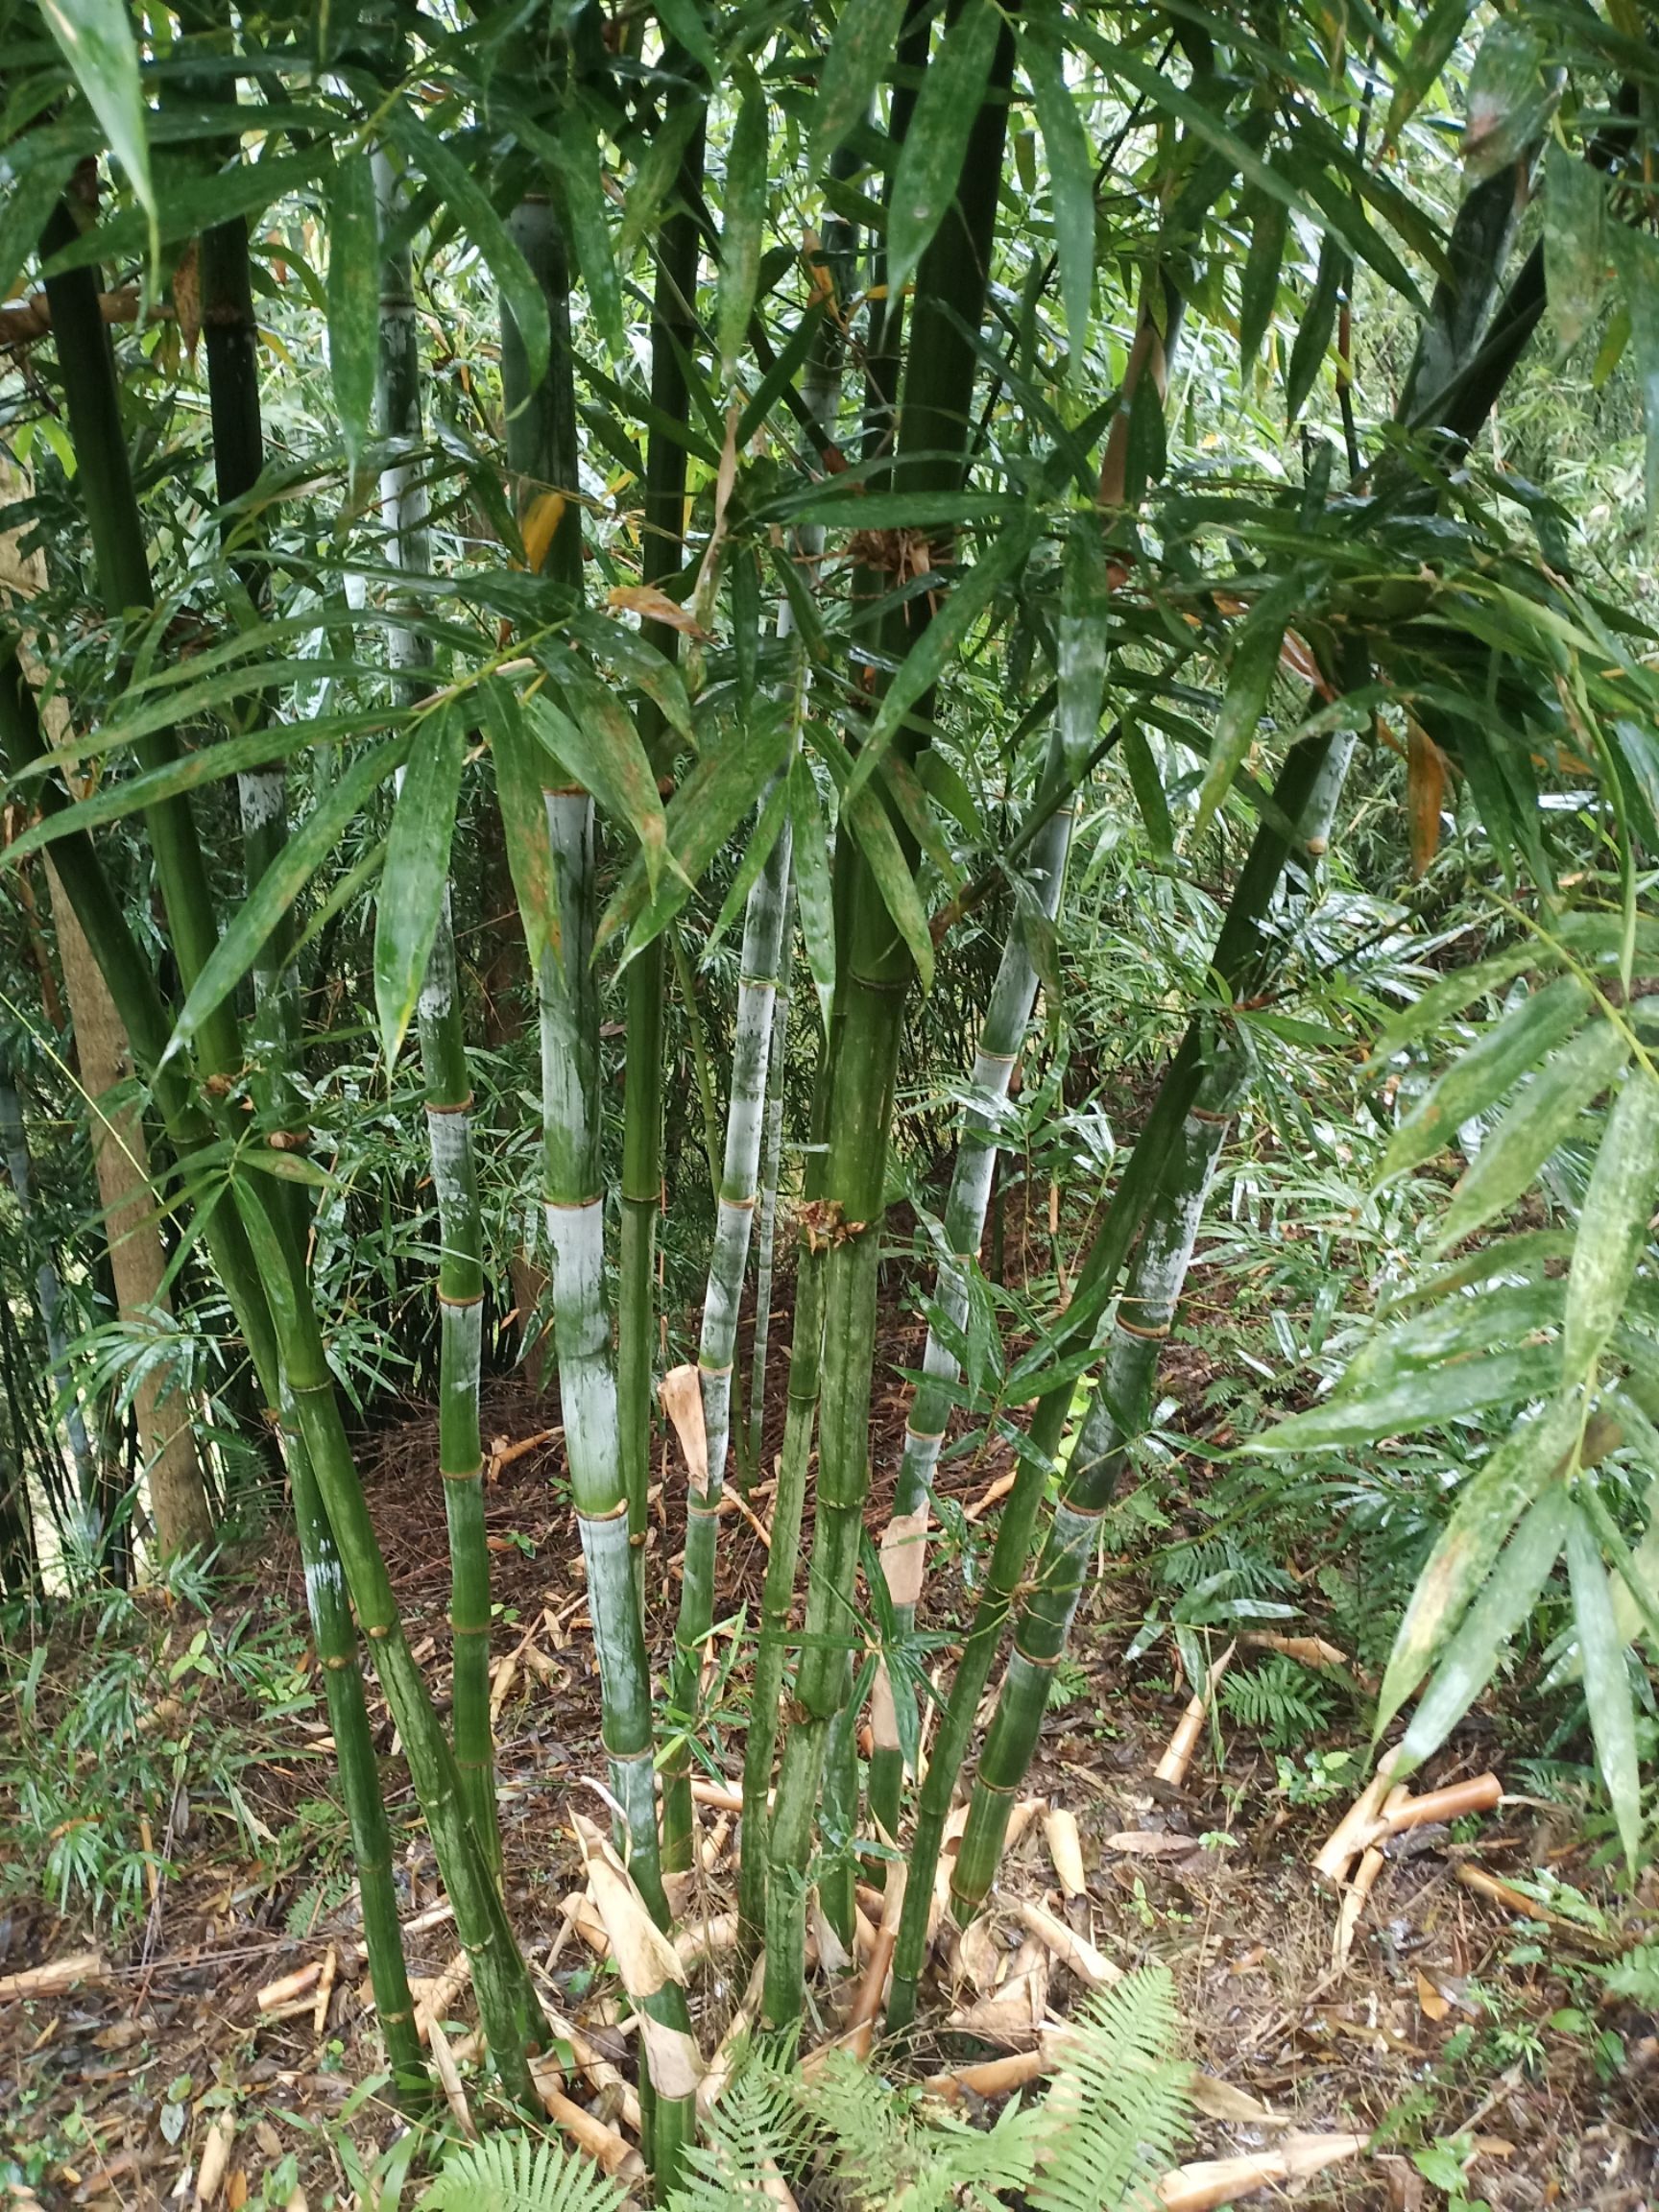 毛竹种子 巨黄竹种大量供应,荒山找变金山就种巨黄竹.